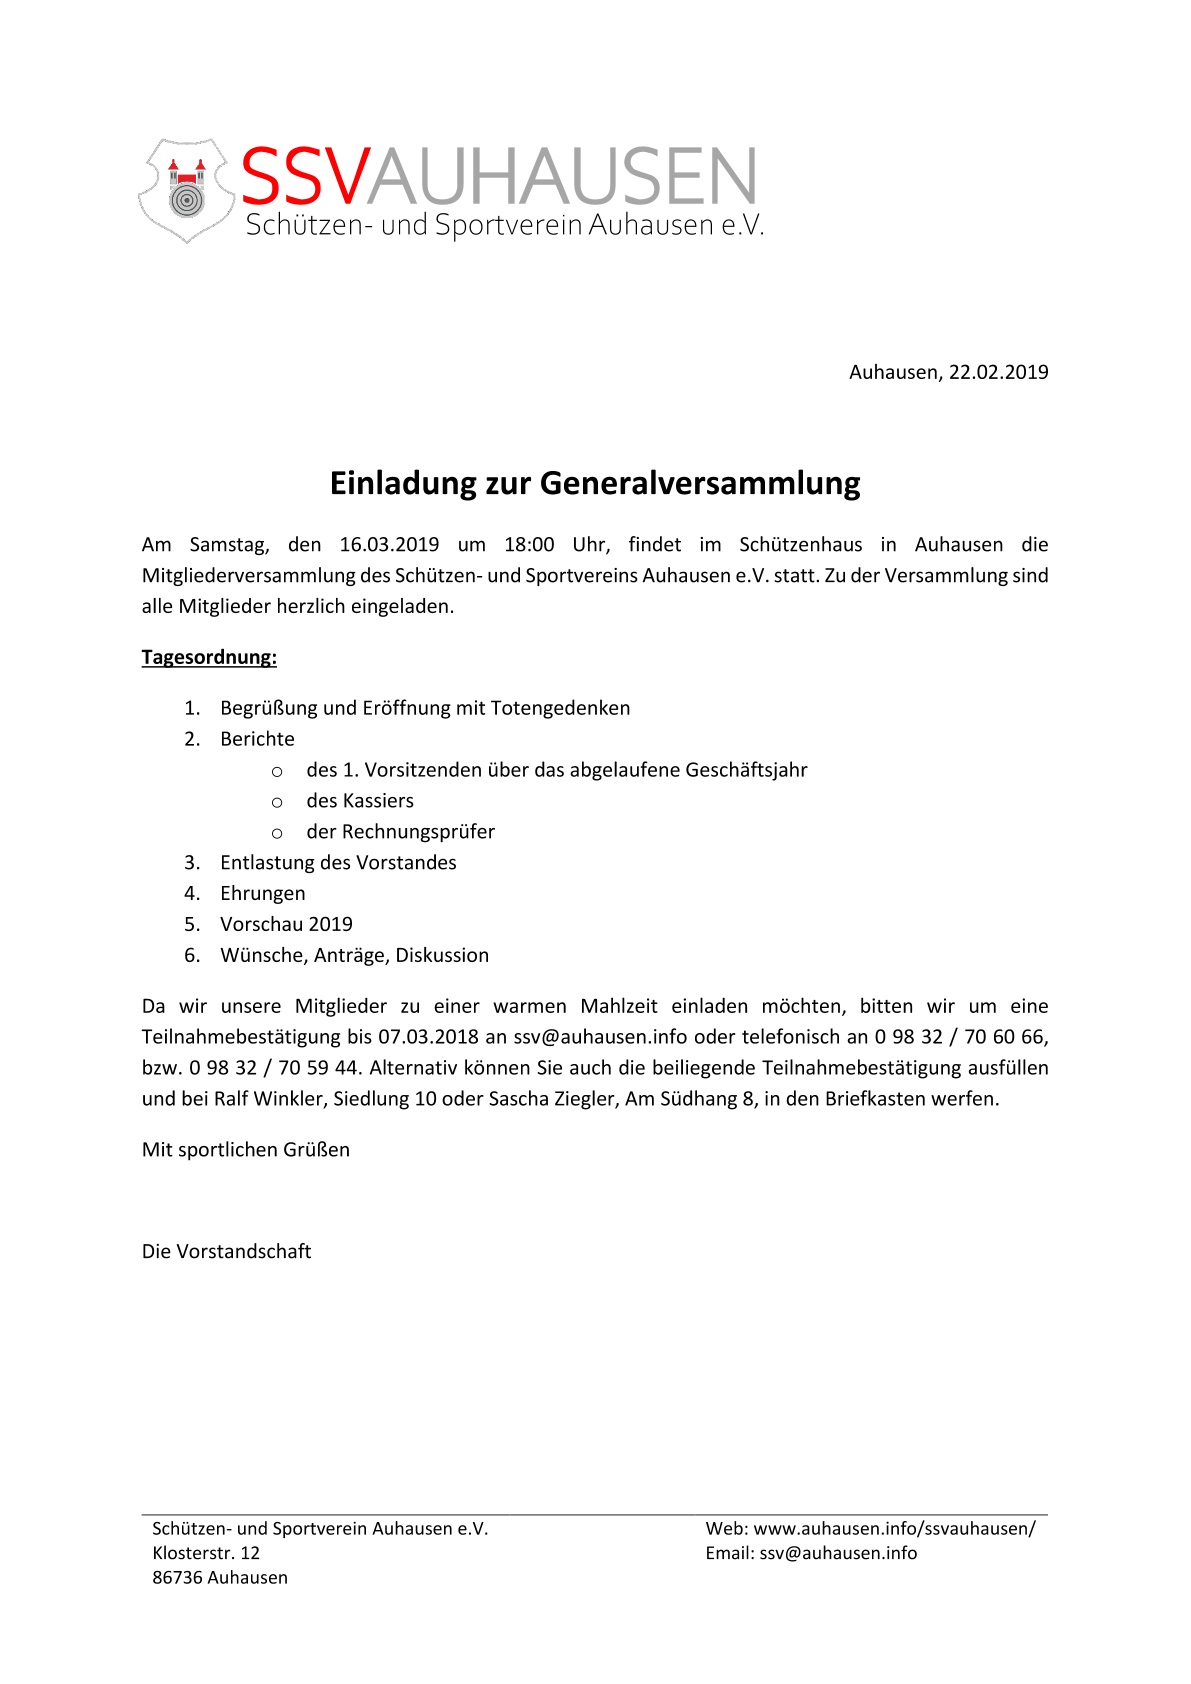 (c) SSV Auhausen - Einladung Mitgliederversammlung